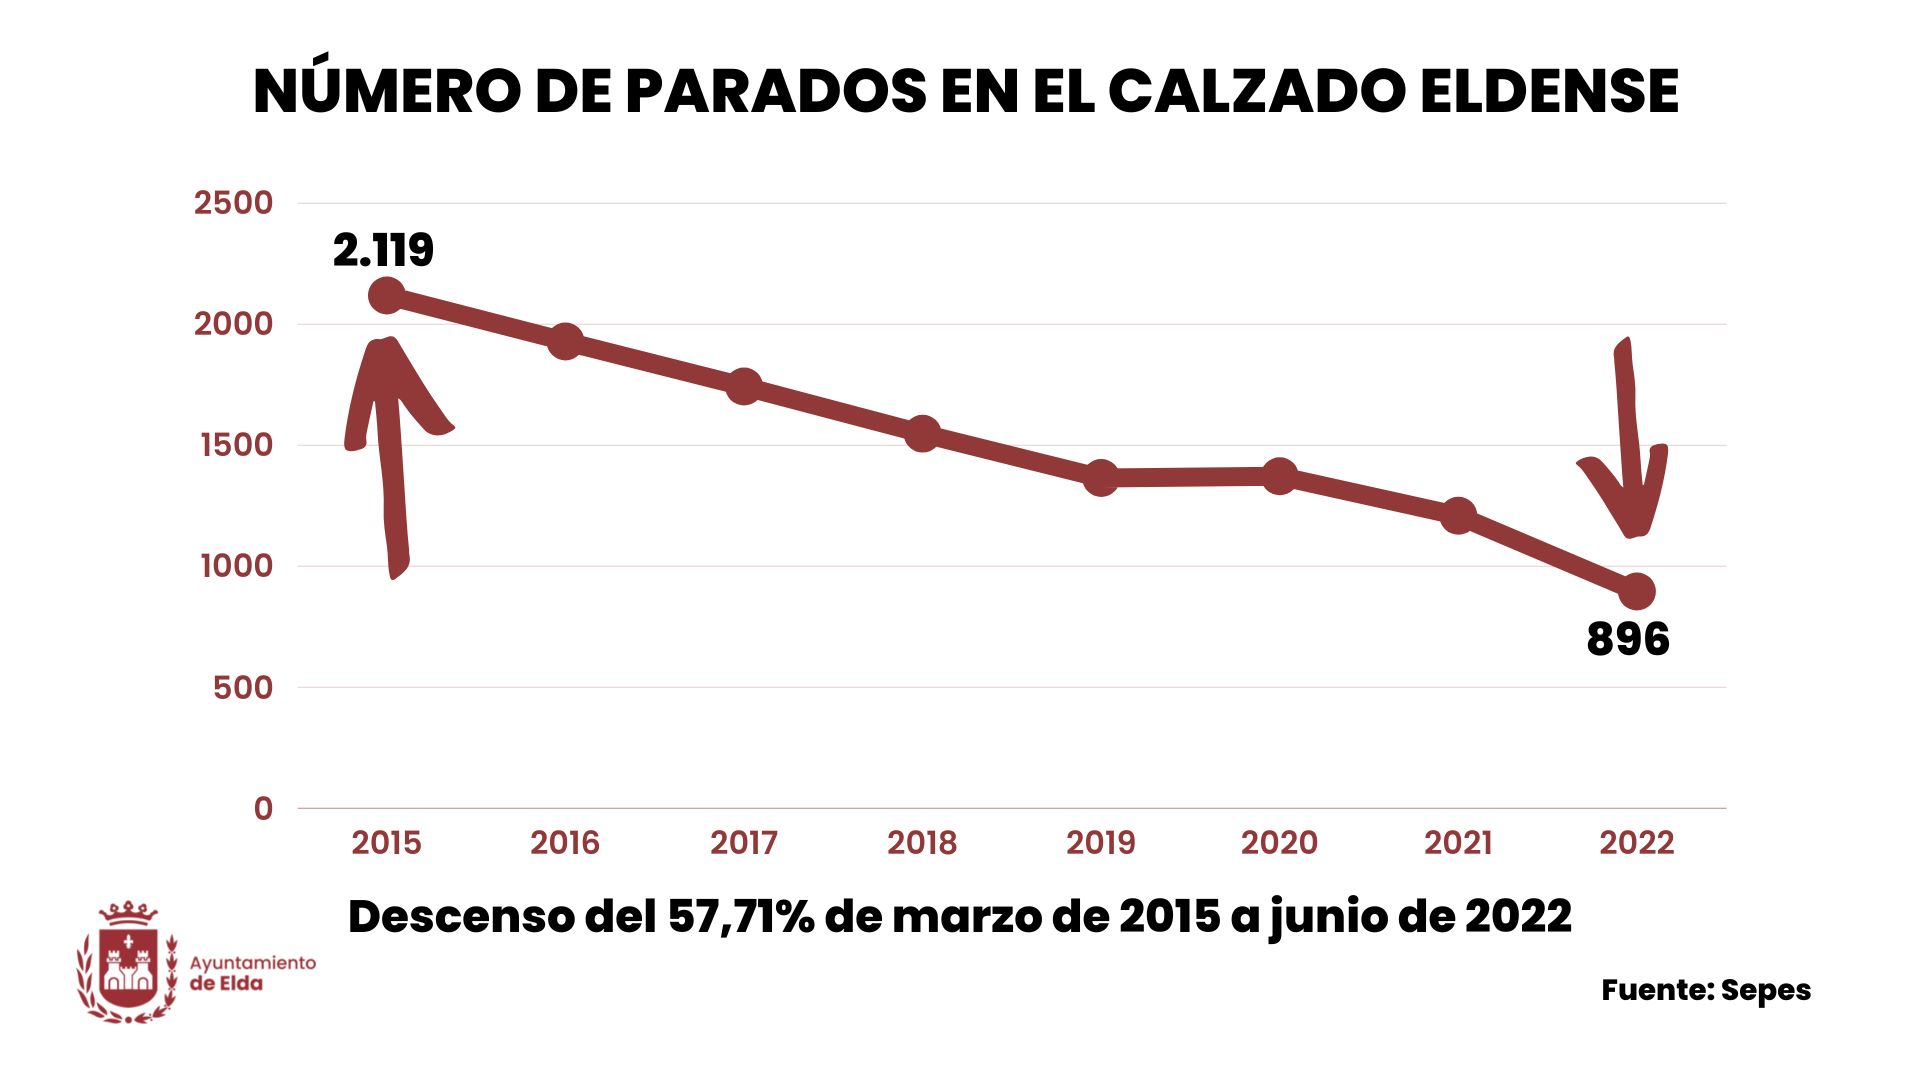 El desempleo en el calzado y la marroquinería de Elda continúa bajando con fuerza y en los últimos siete años se ha reducido un 57,7%